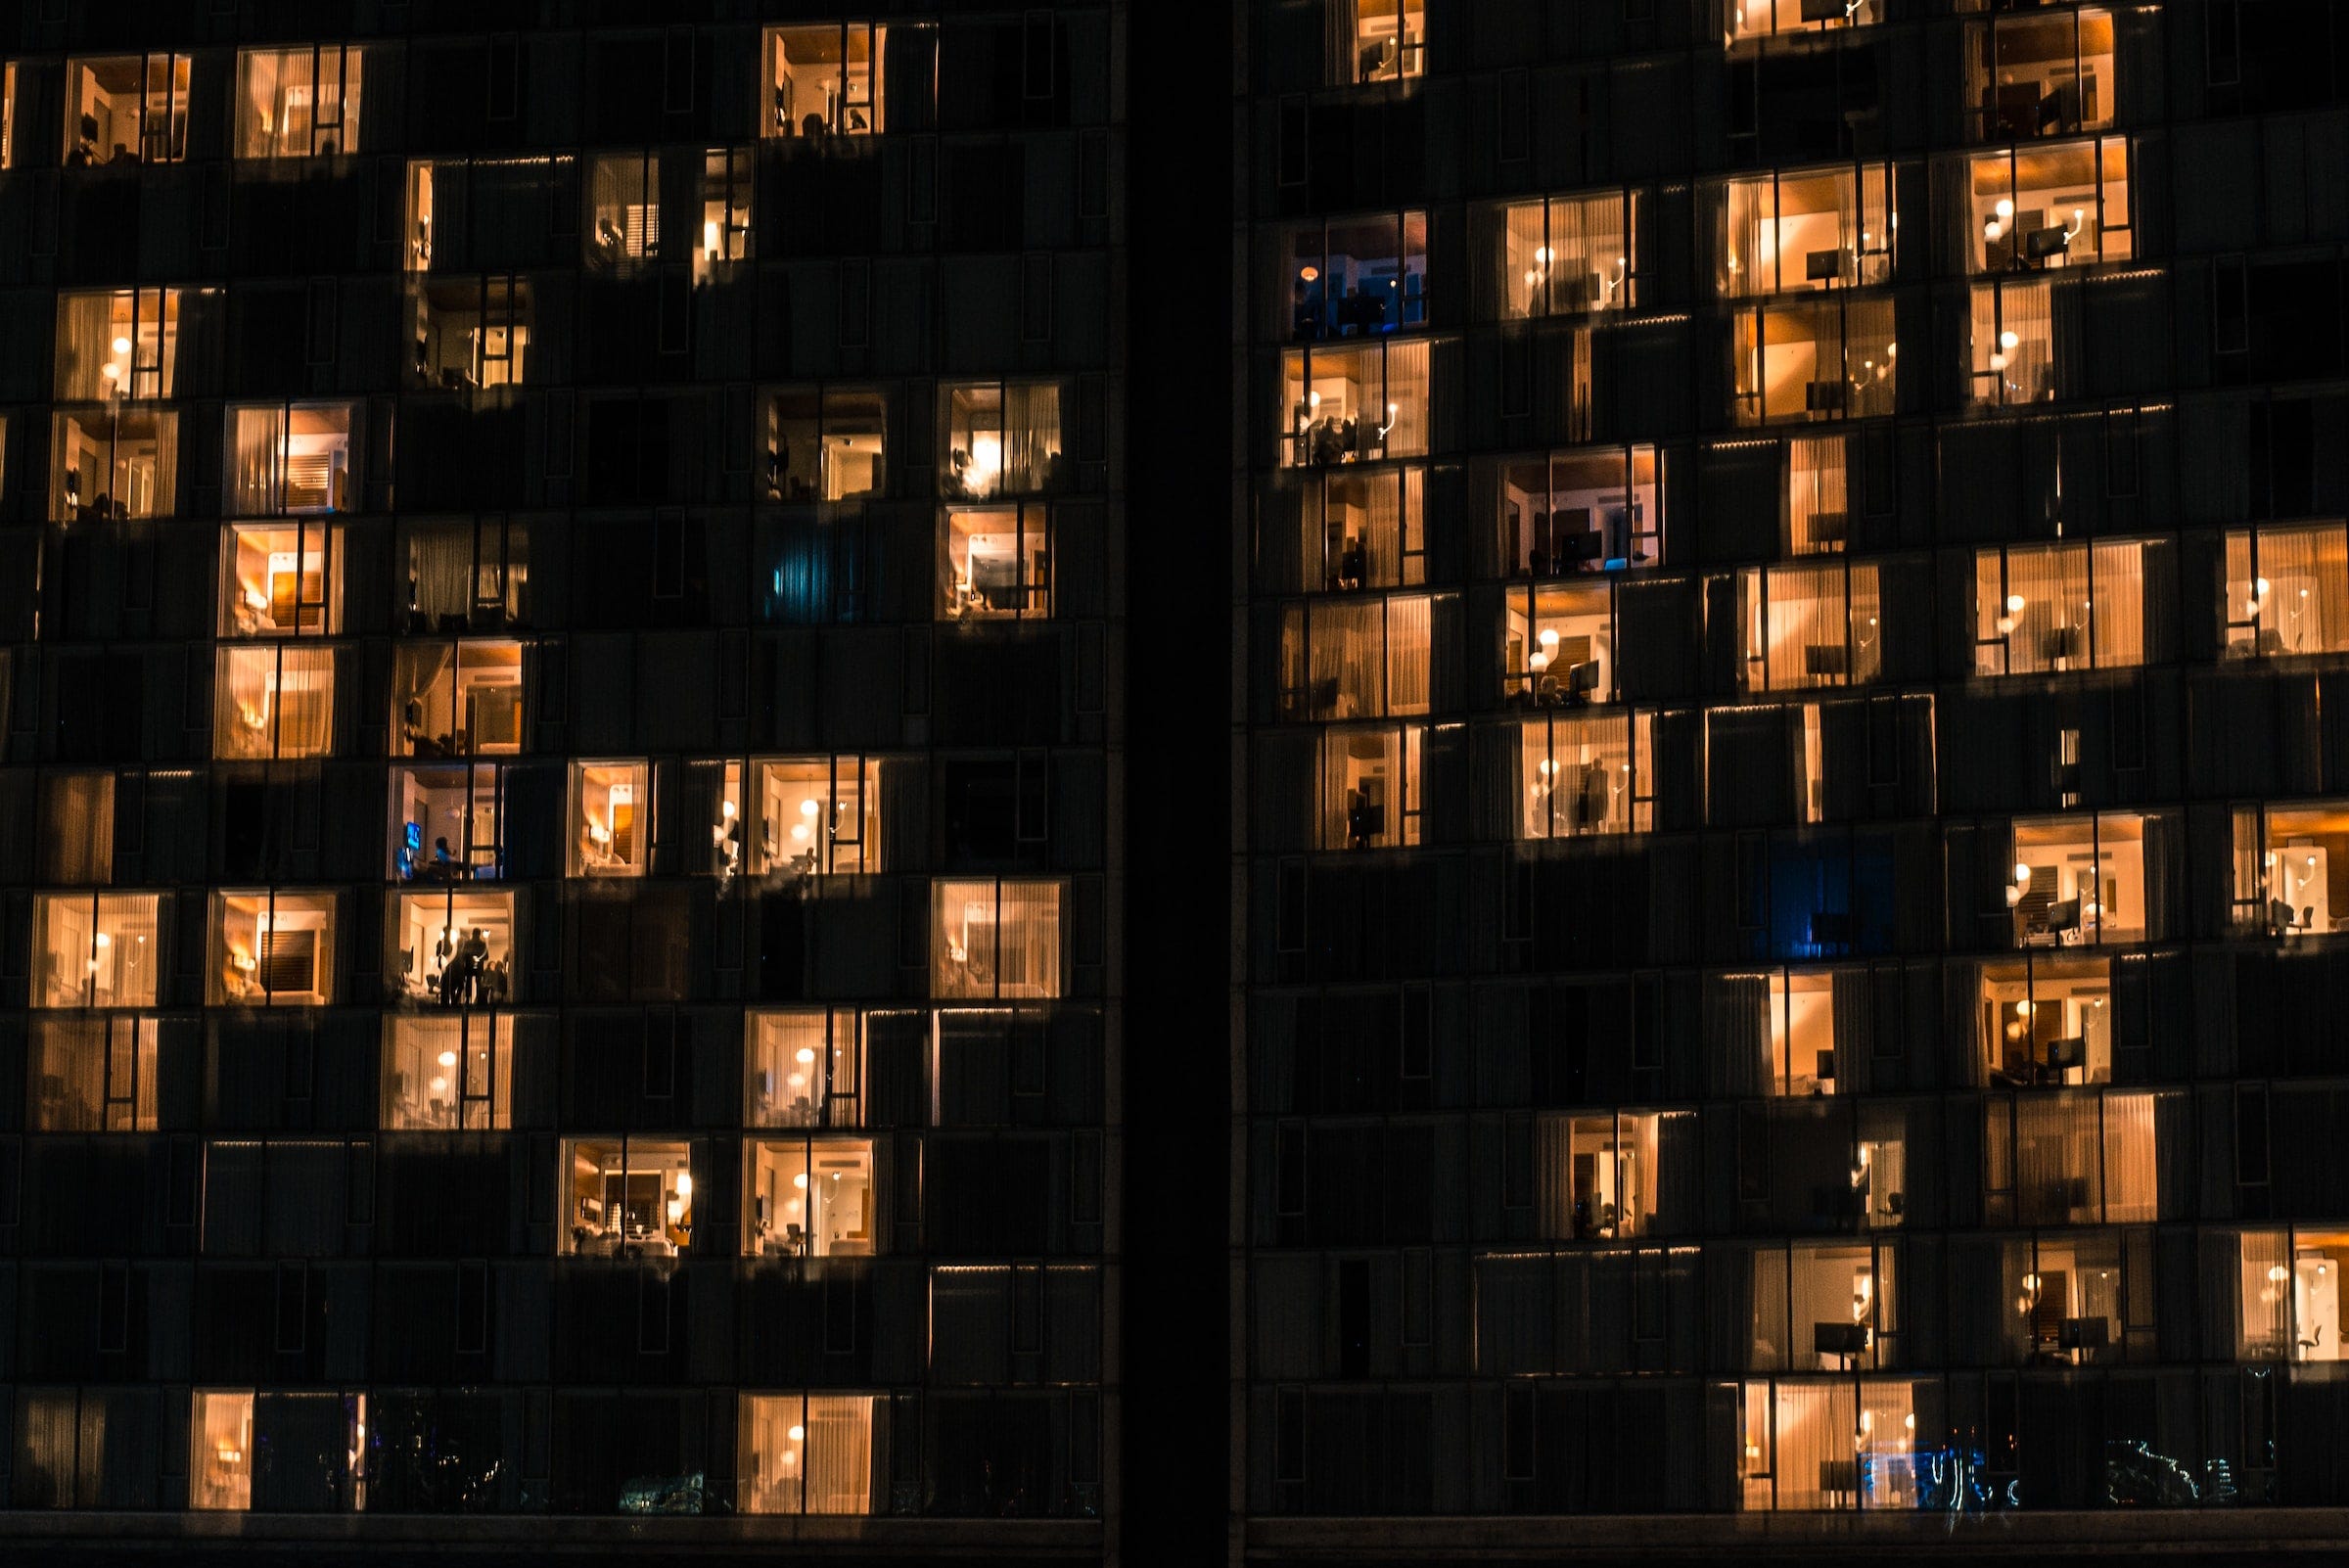 Le finestre illuminate di un grande edificio, probabilmente un grattacielo: è già notte e molte finestre del palazzo sono illuminate. Alcune di loro sono schermate da tende, altre invece lasciano trasparire la vita delle case e degli uffici.